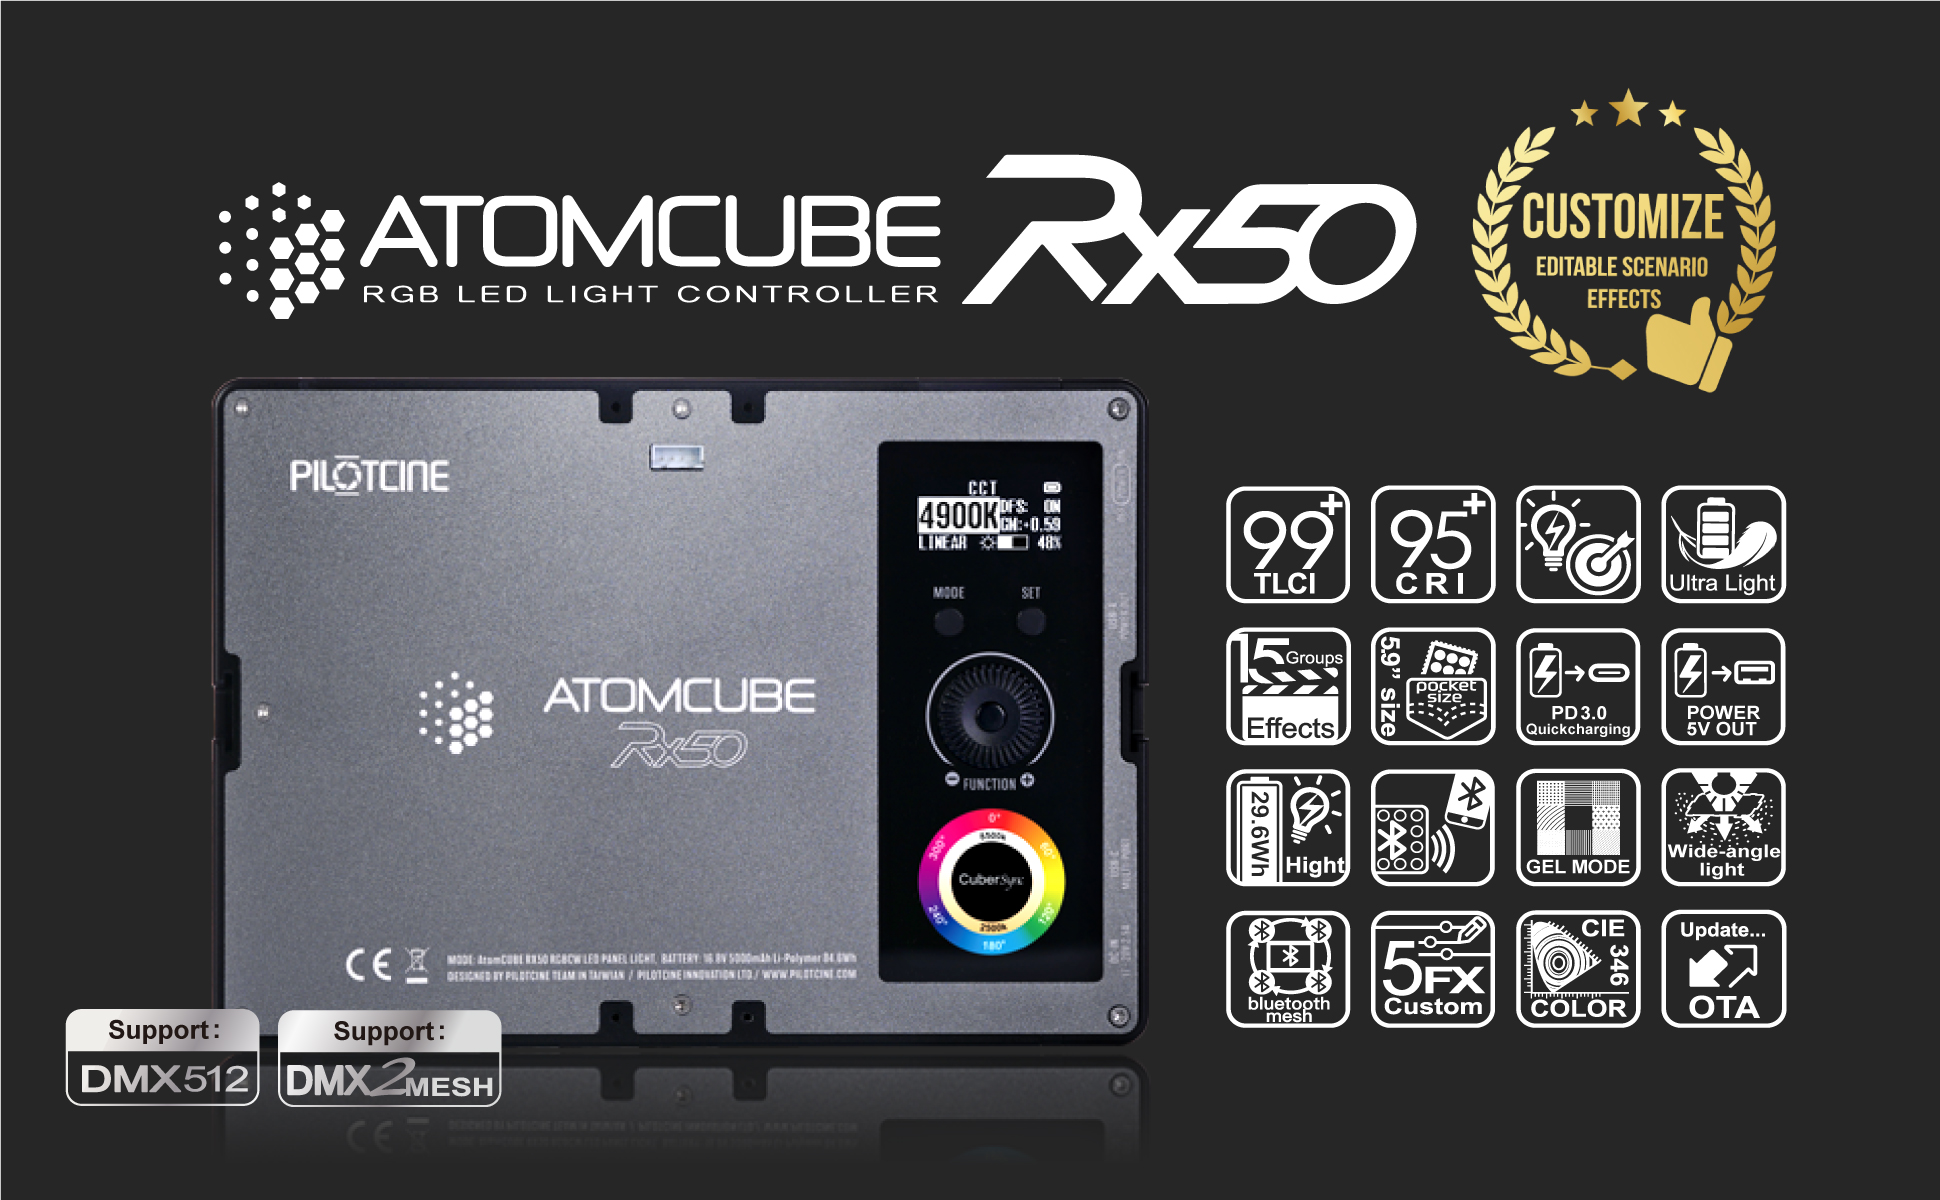 AtomCUBE RX50 10